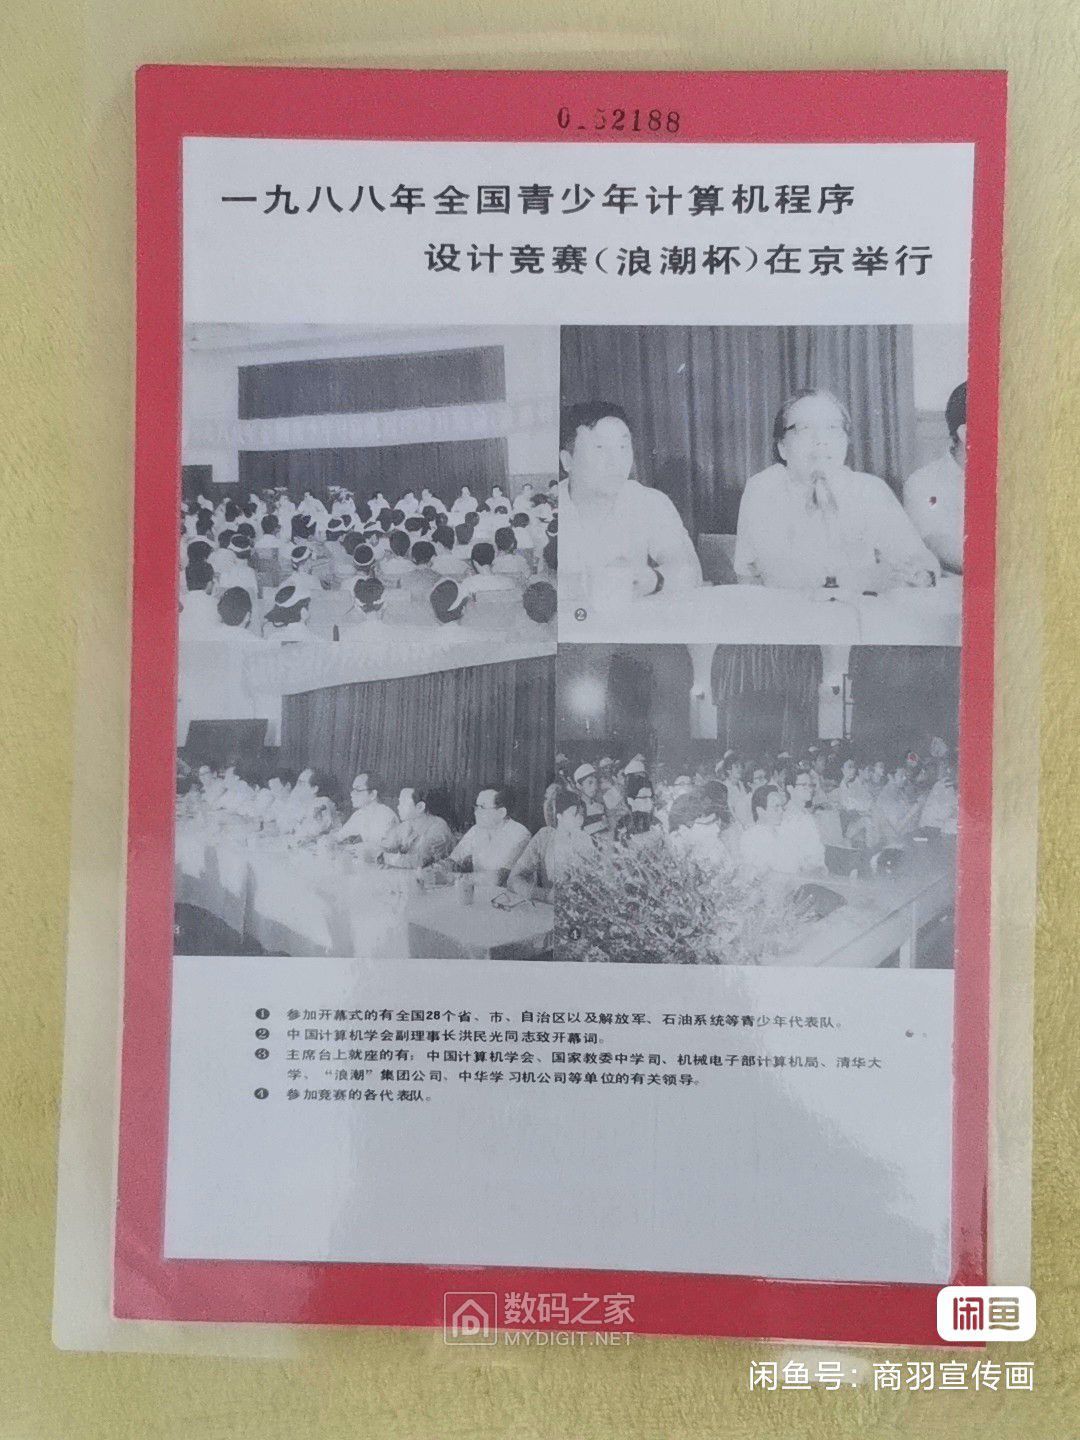 7-1988年全国青少年计算机程序设计竞赛在北京举行